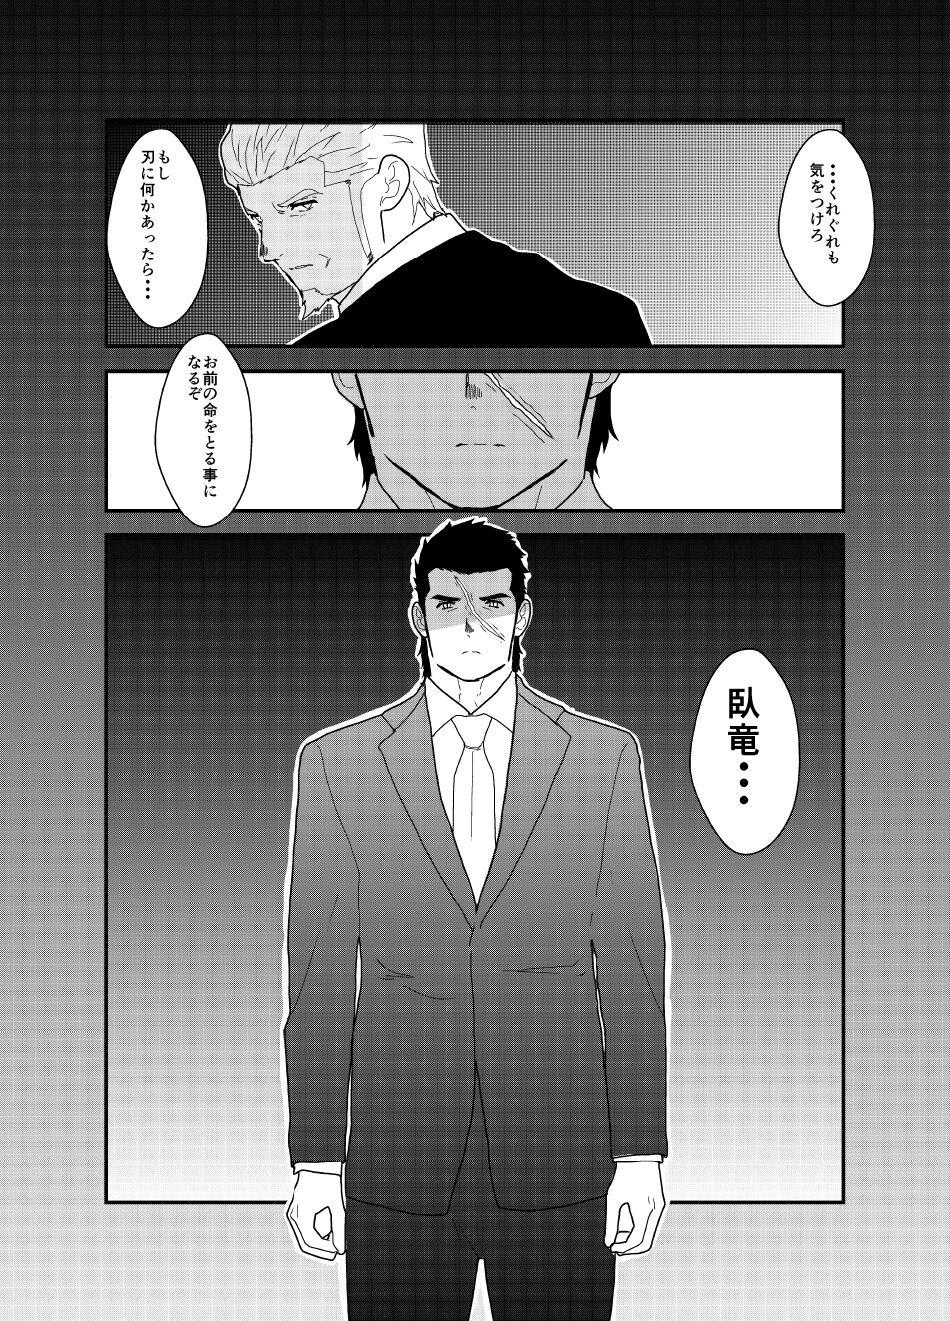 Moshimo yakuza ga 1-ri etchi shite iru tokoro o mi raretara. | What if a Yakuza Got Caught Pleasuring Himself? 49